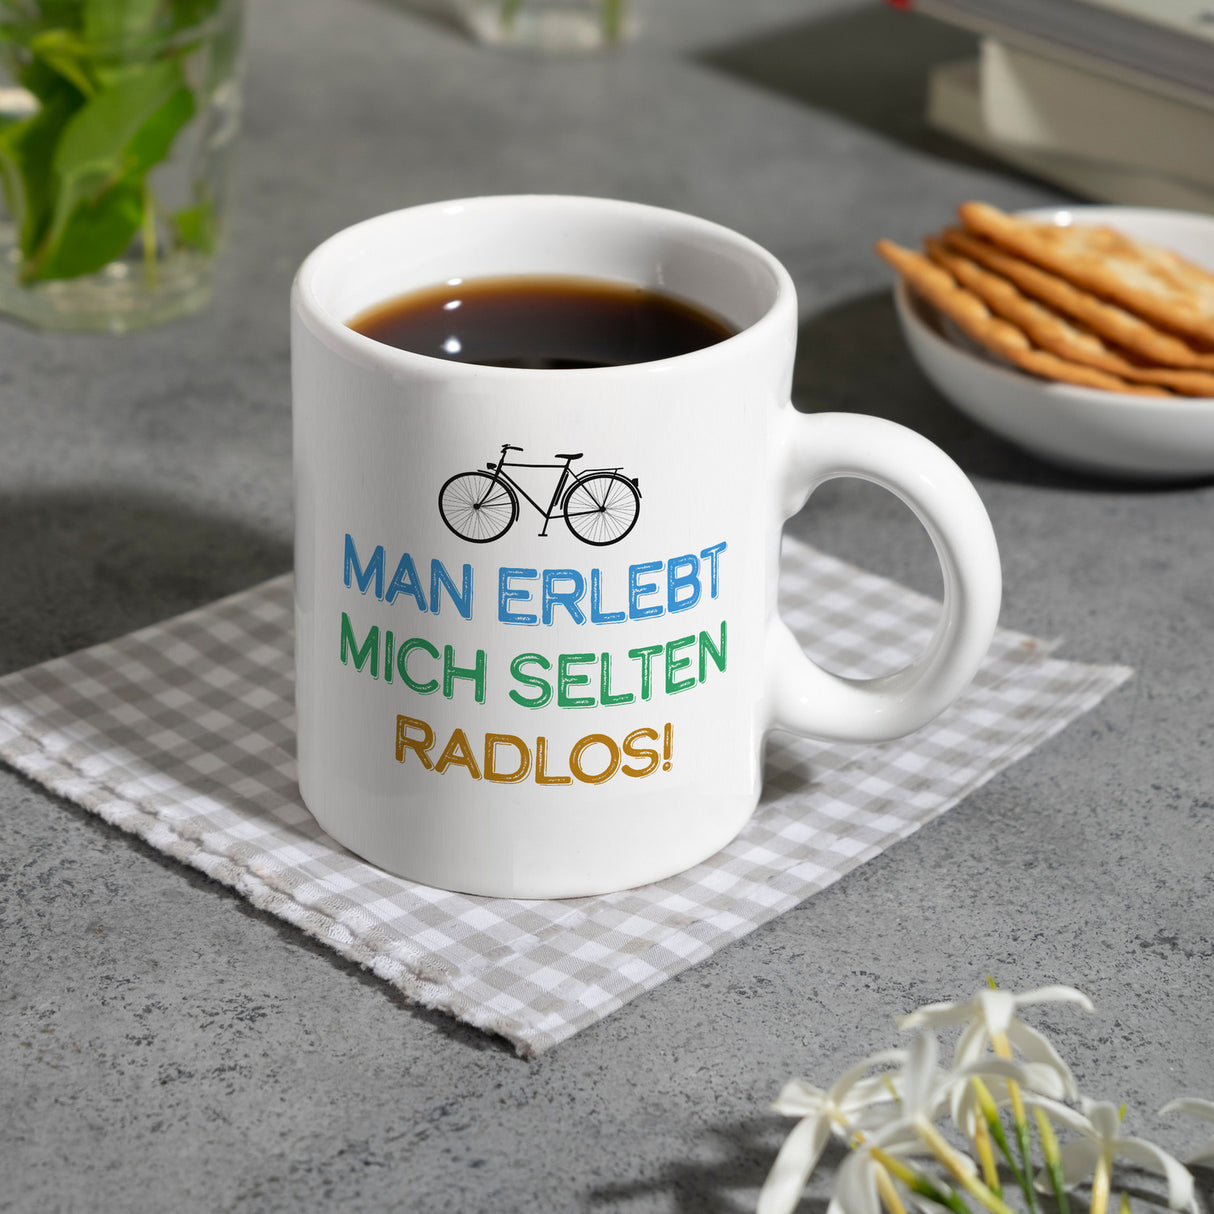 Man erlebt mich selten radlos Kaffeebecher mit Fahrrad Motiv